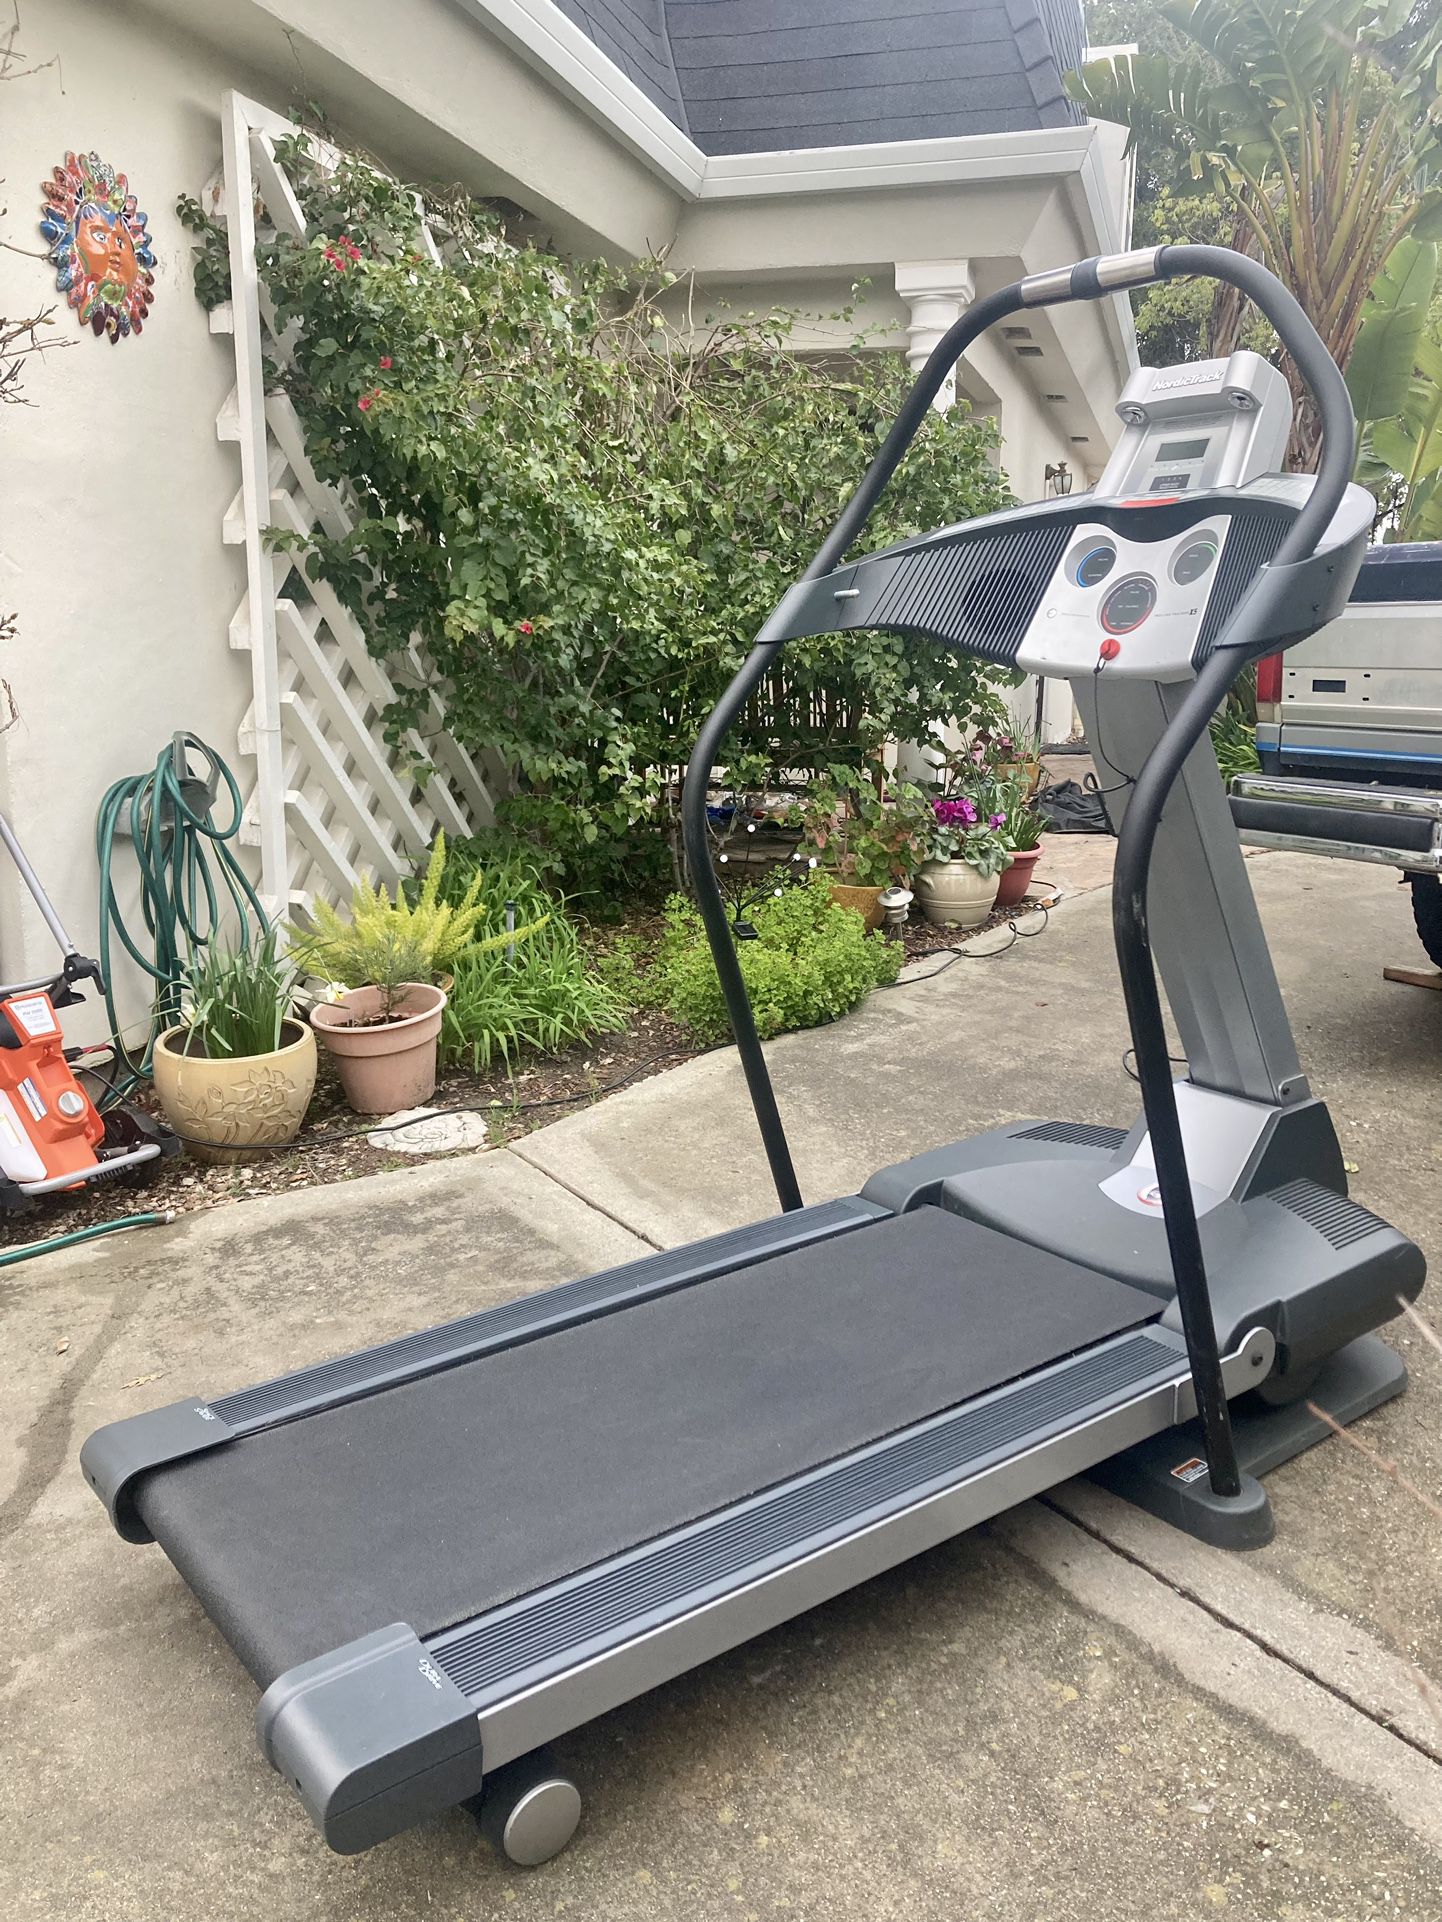 Nordic Track Incline Treadmill